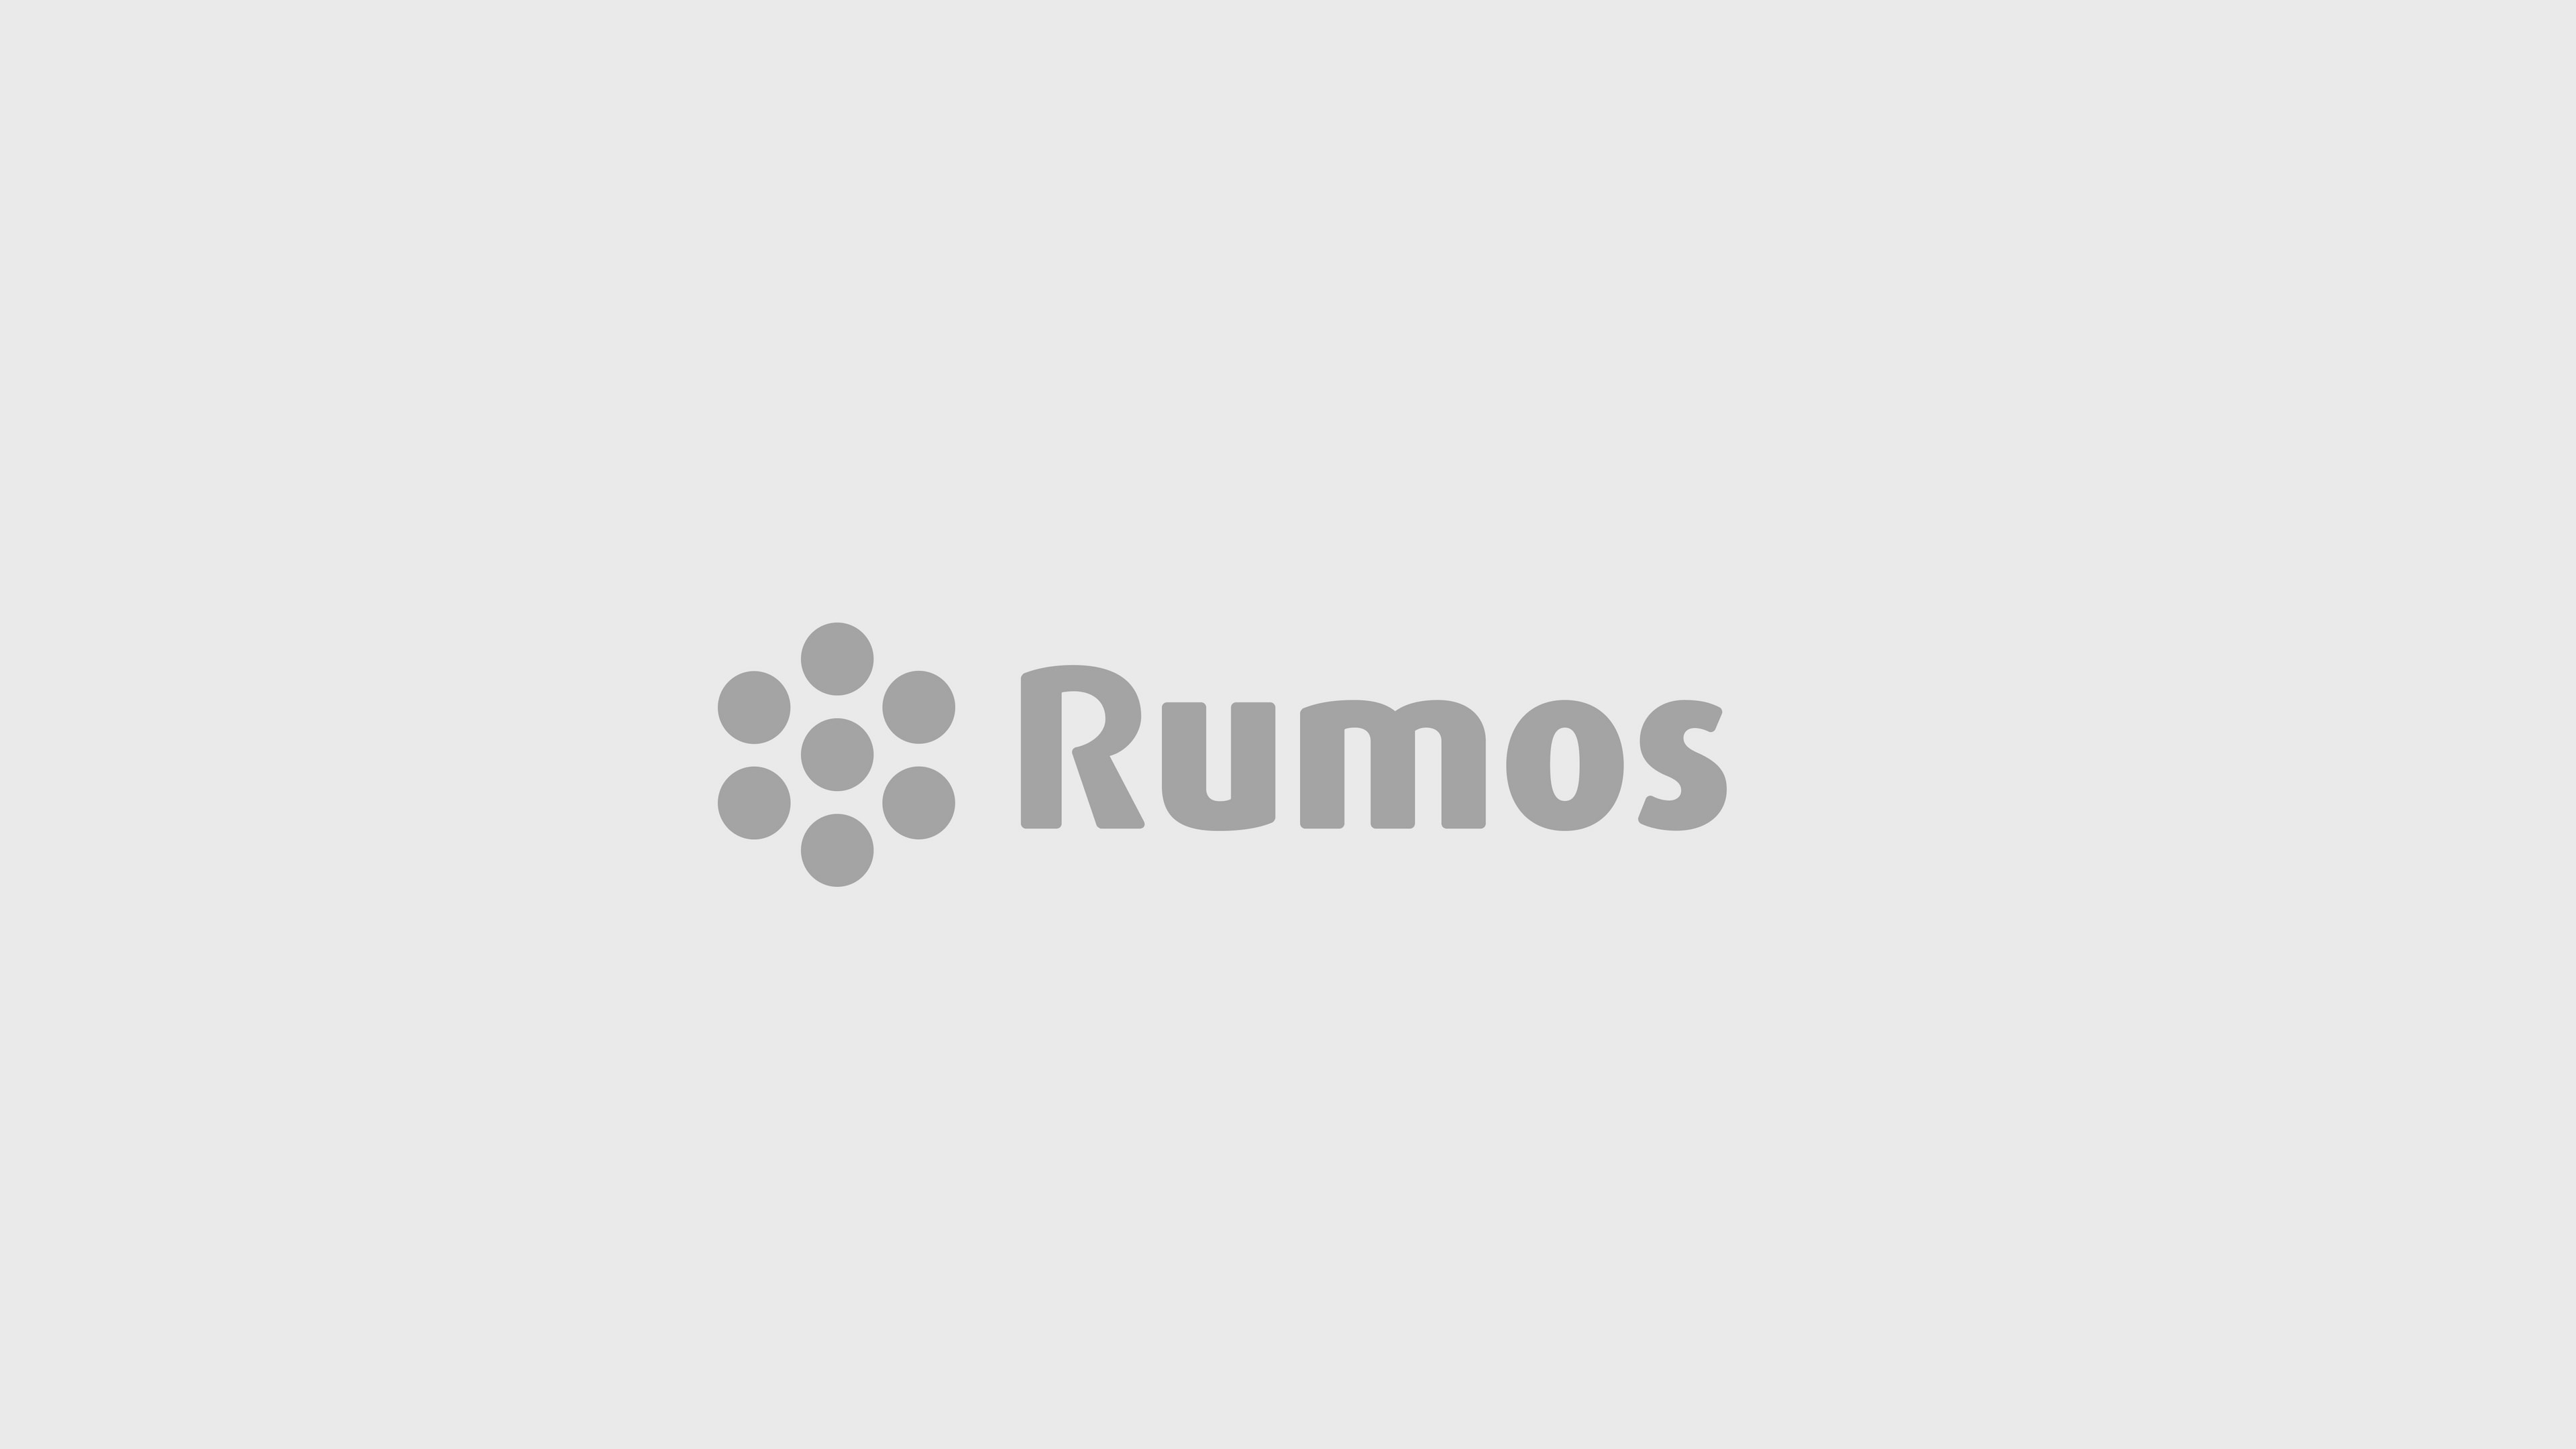 Rumos-Jose Gomes